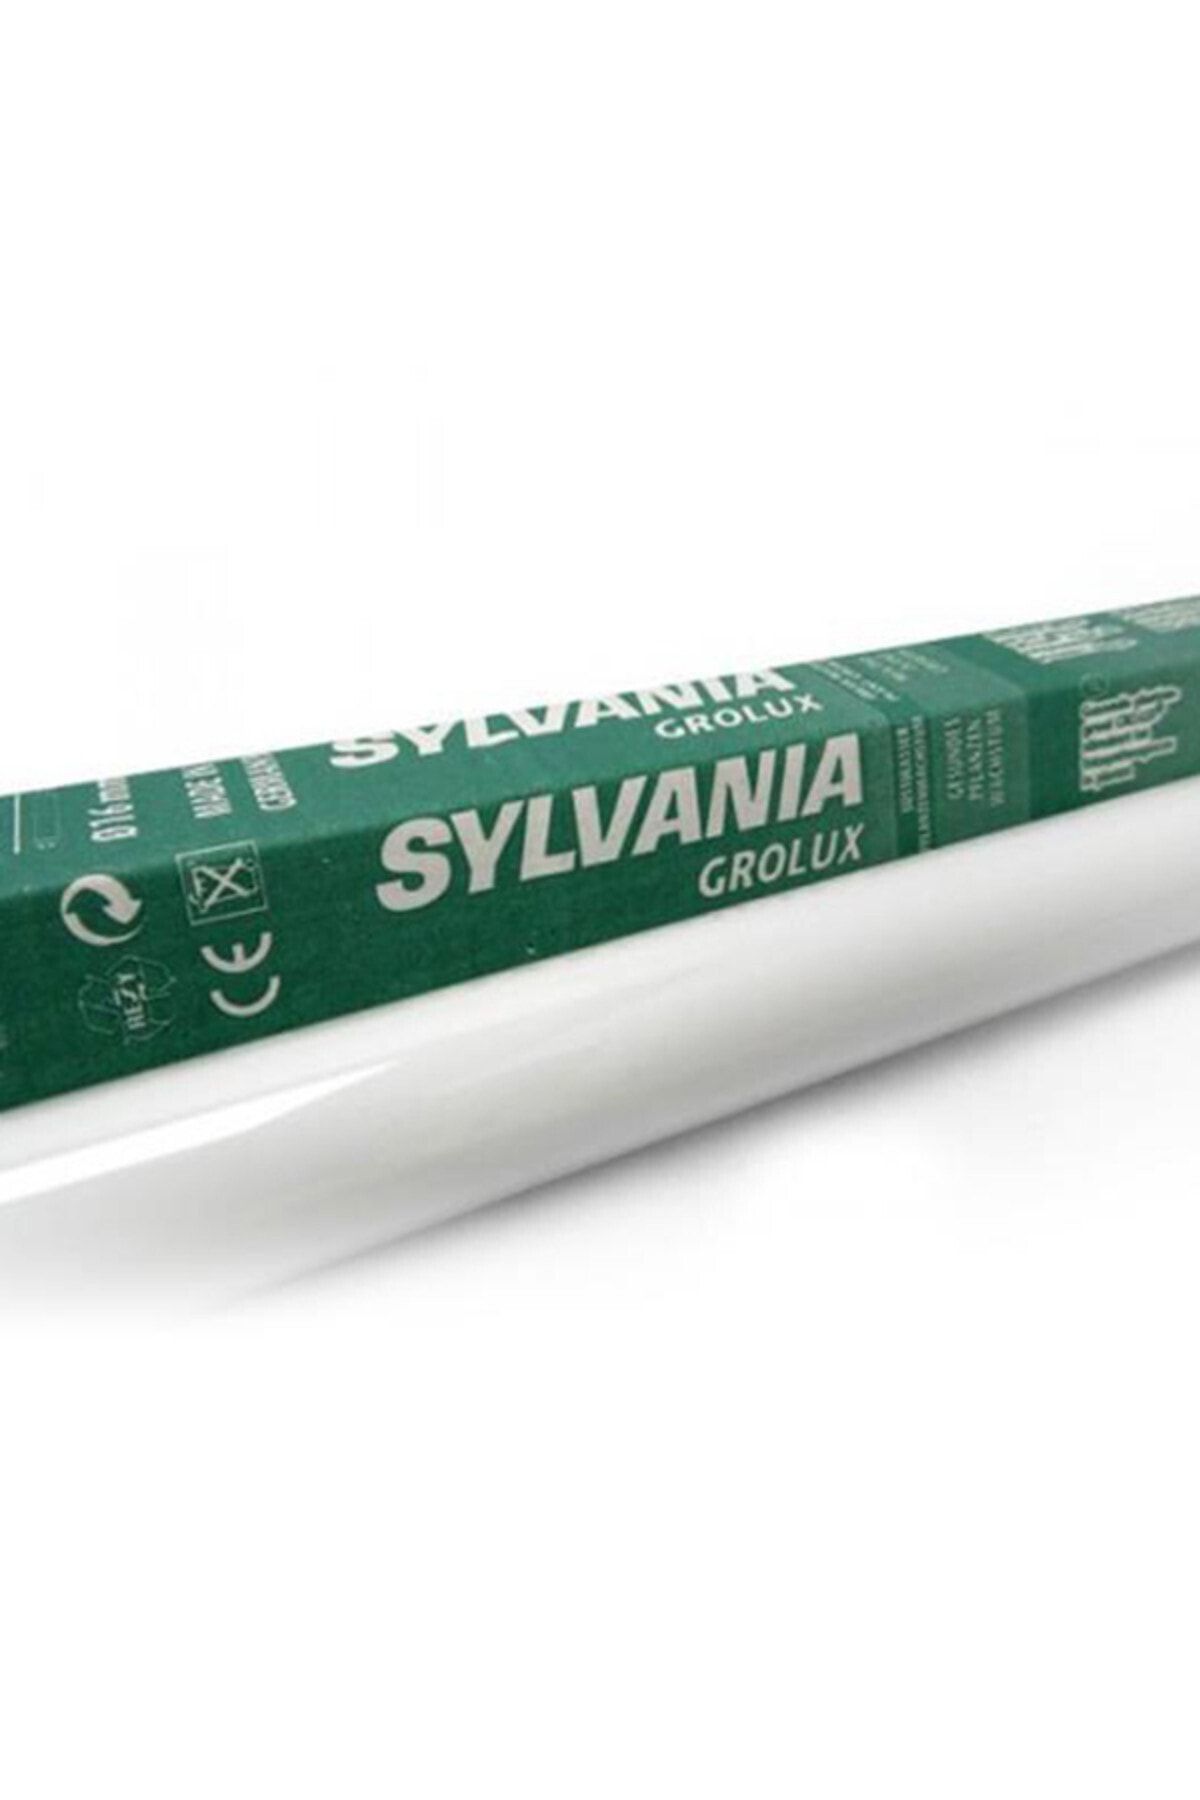 Sylvania Grolux T5 24W 550mm 8500K